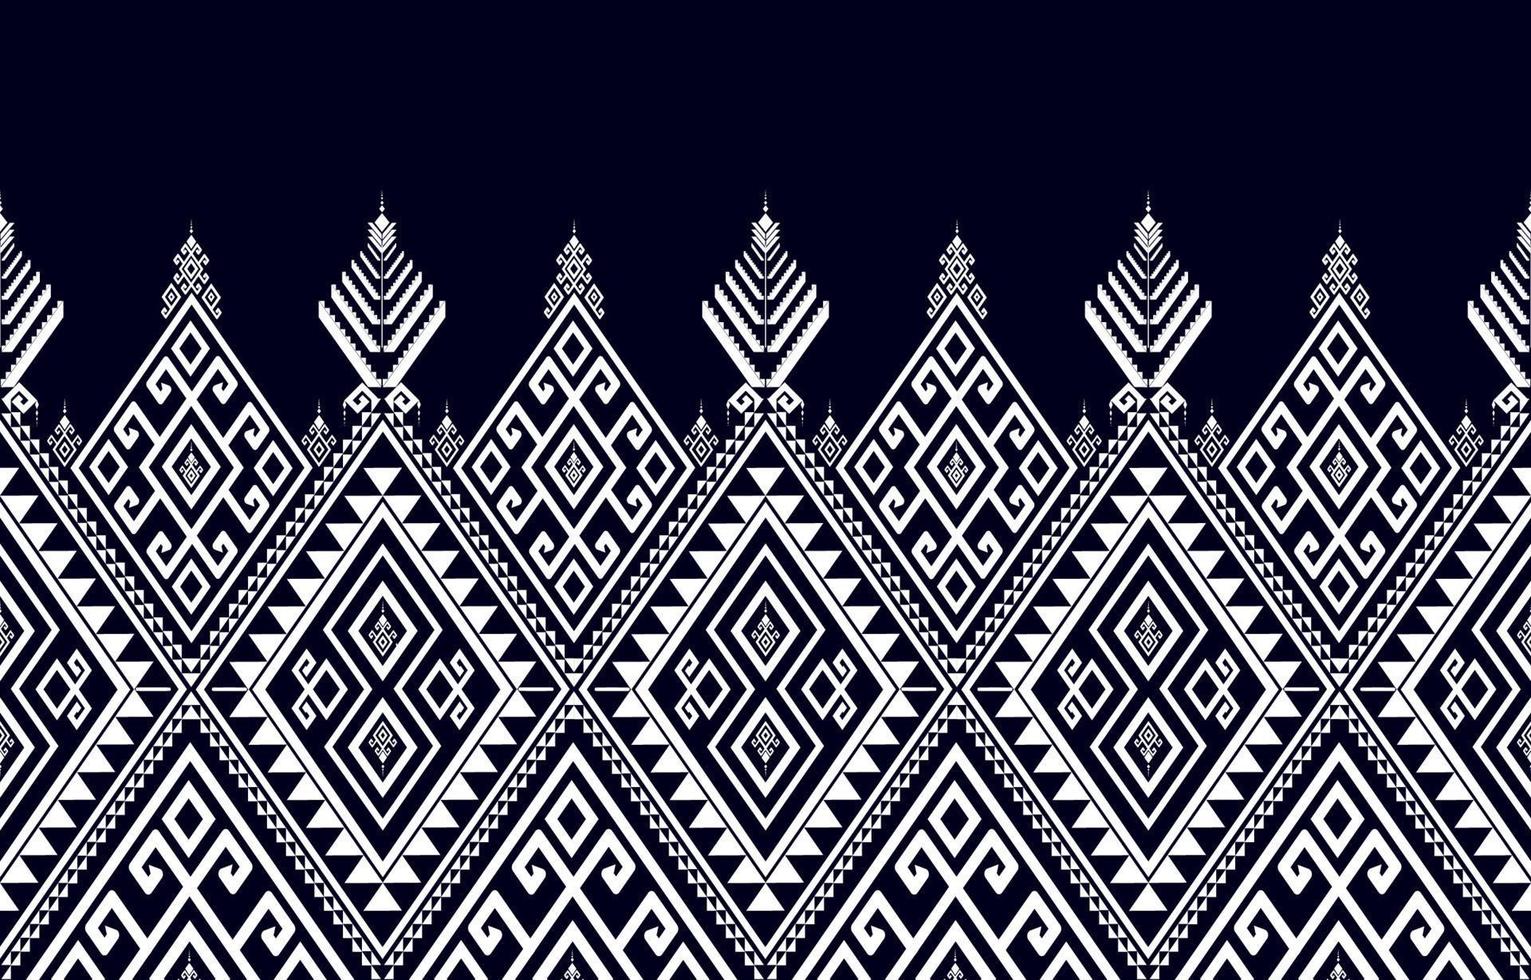 preto e branco abstrato geométrico padrão étnico ocidental, índio americano onrental áfrica. para tapete,papel de parede,vestuário,embrulho,batik,tecido,telha, pano de fundo,ilustração vetorial. estilo bordado. vetor